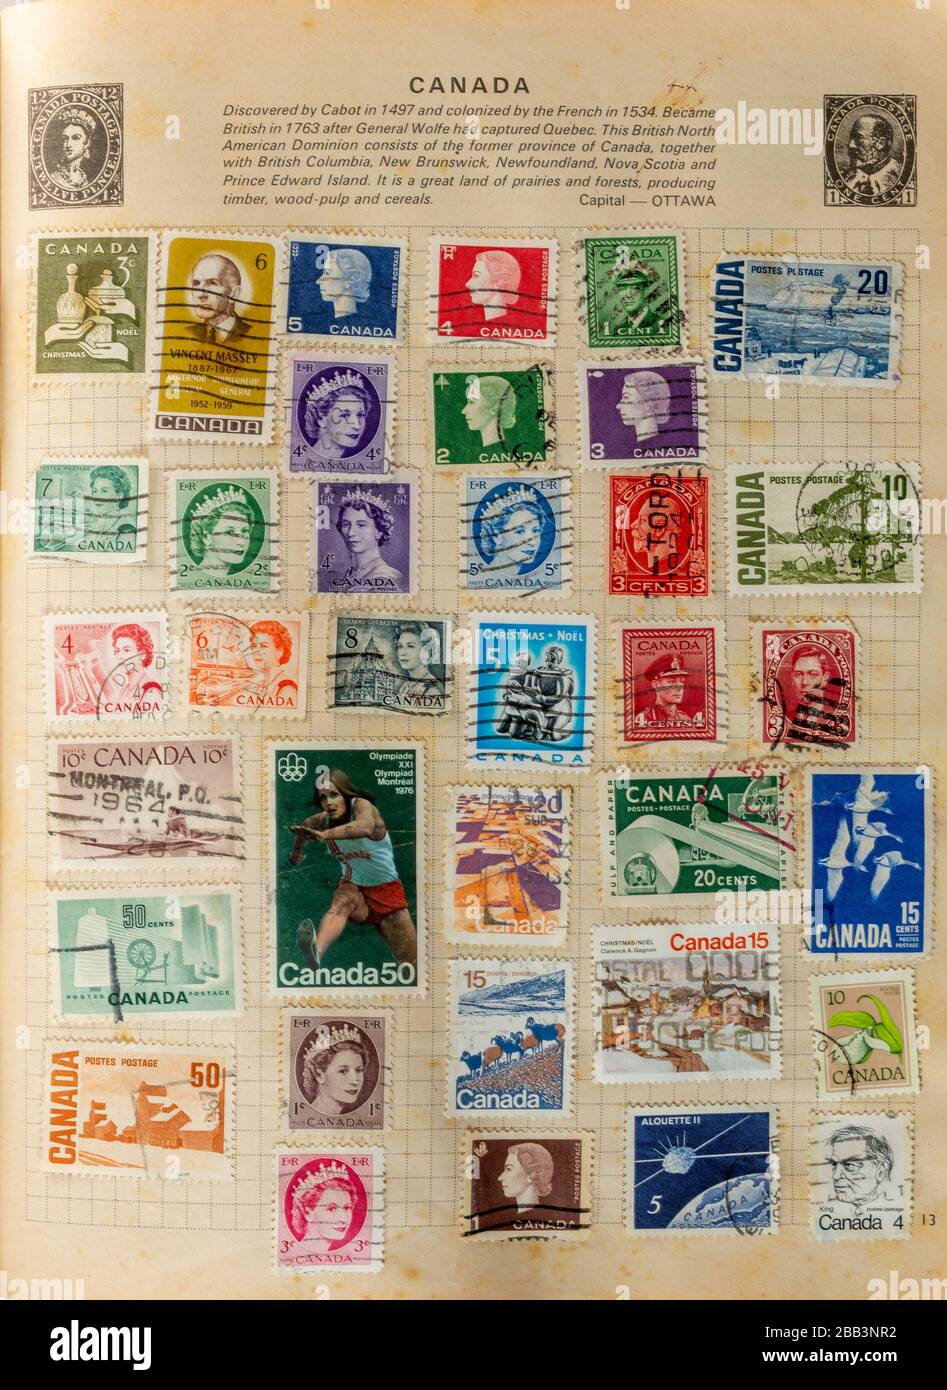 Album de timbres, collecte de timbres, passe-temps, hobbies, philatélie Banque D'Images